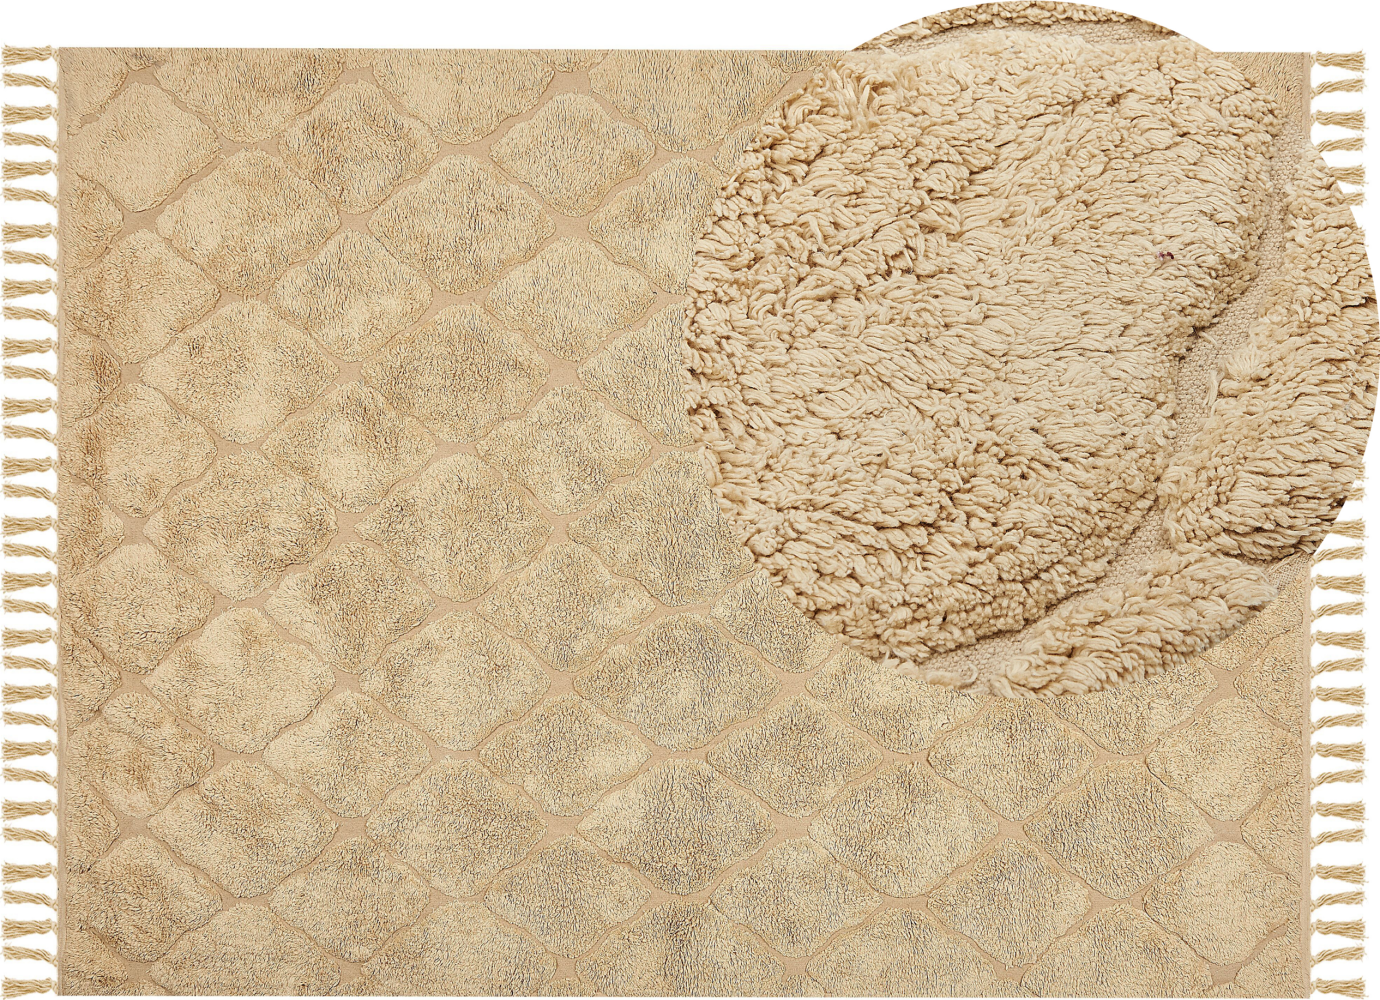 Teppich Baumwolle sandbeige 160 x 230 cm geometrisches Muster Kurzflor SANLIURFA Bild 1